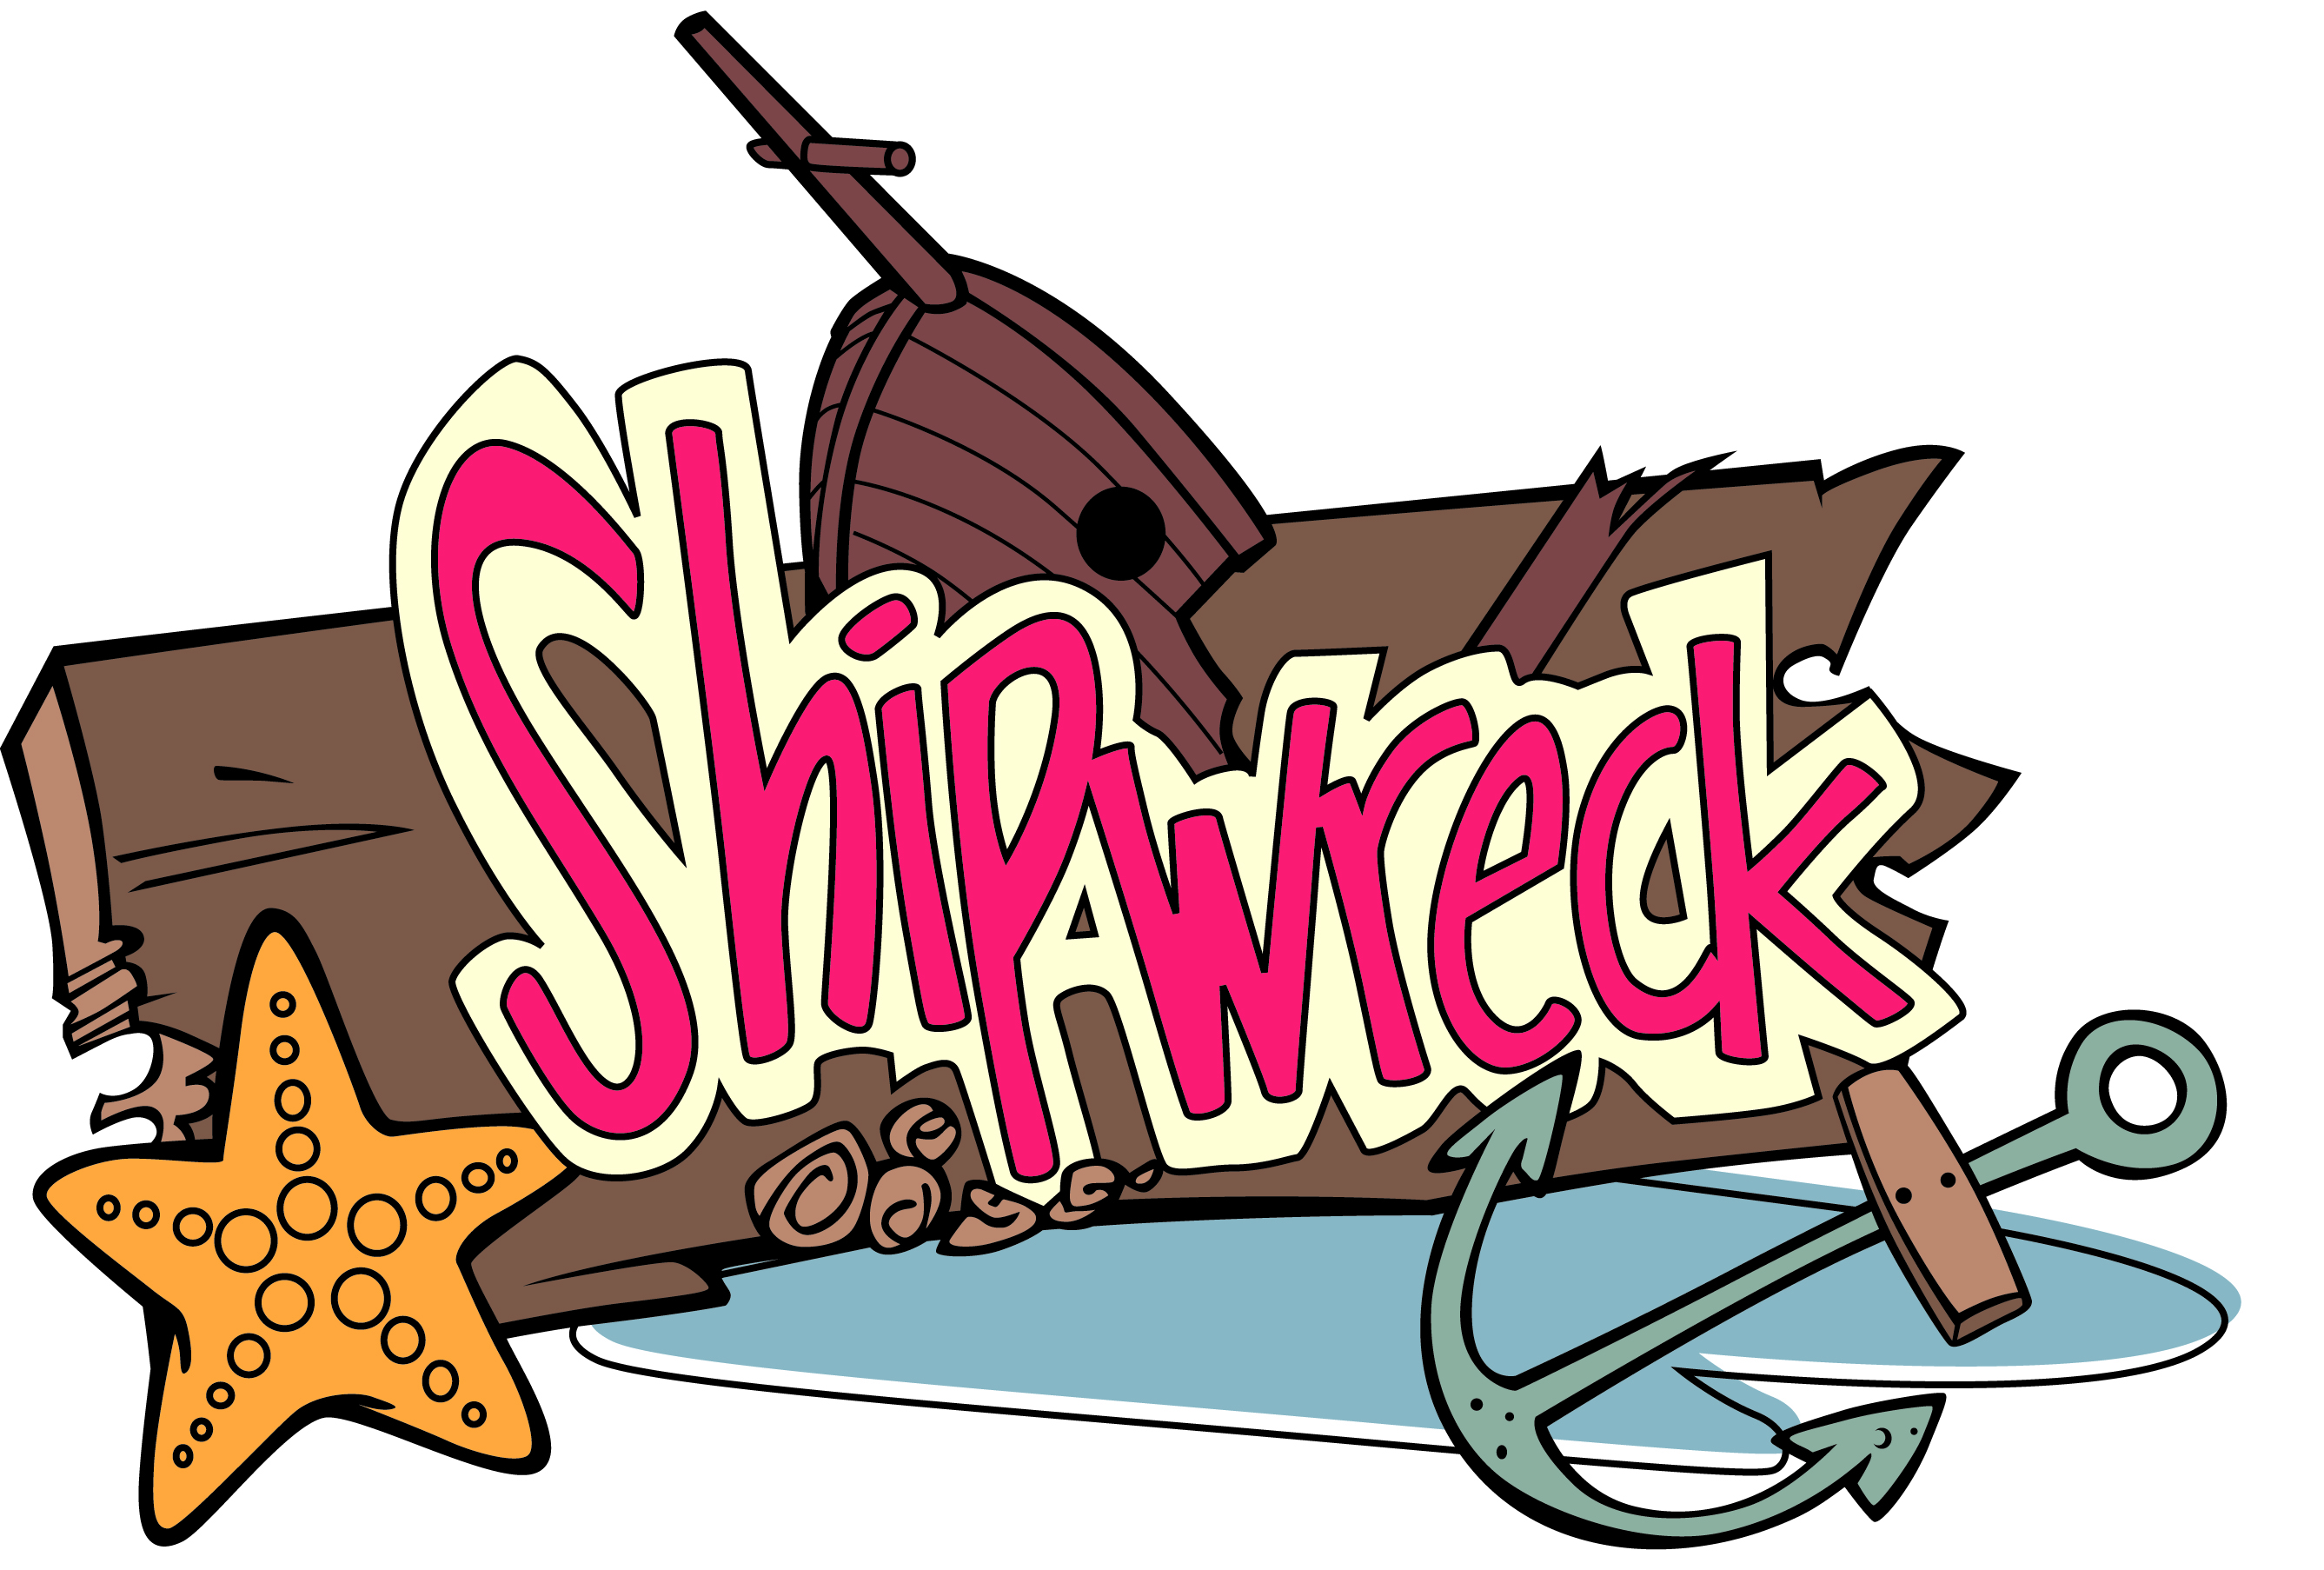 Shipwreck Clipart - Tumundografico